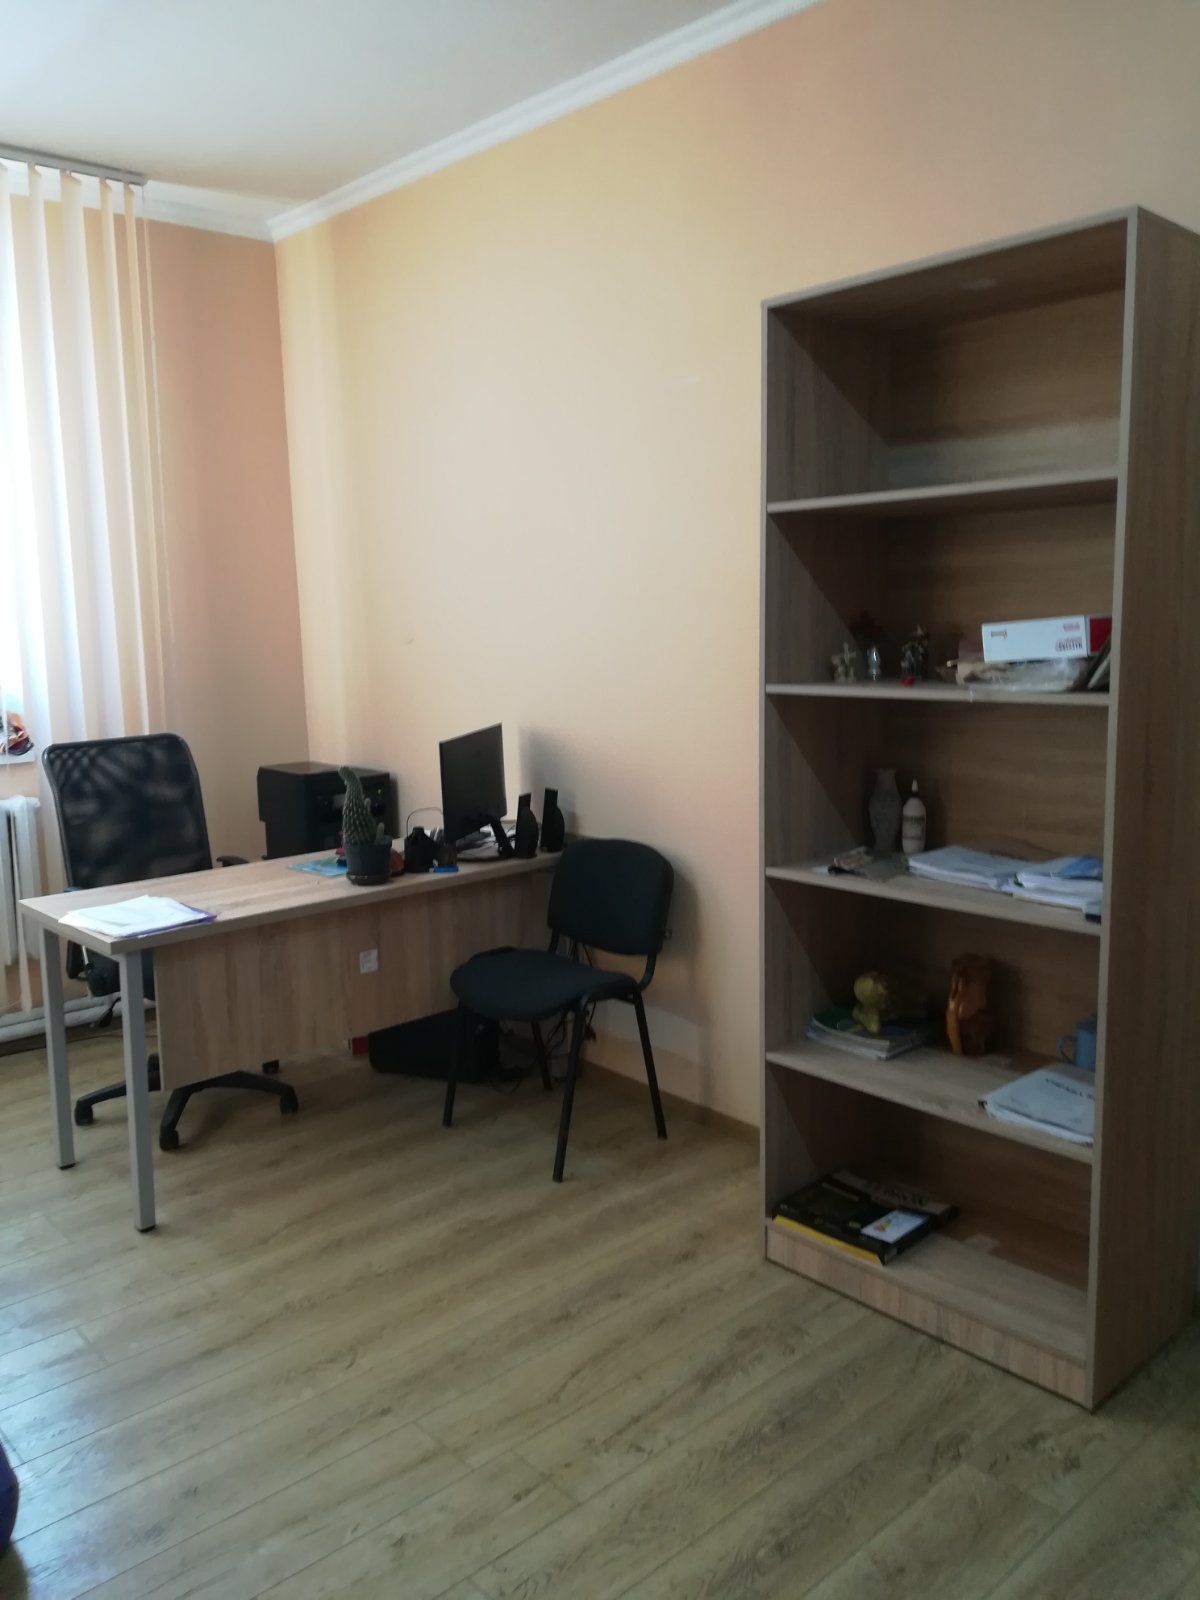 Все ОТГ в Закарпатье обеспечат компьютерным оборудованием и офисной мебелью